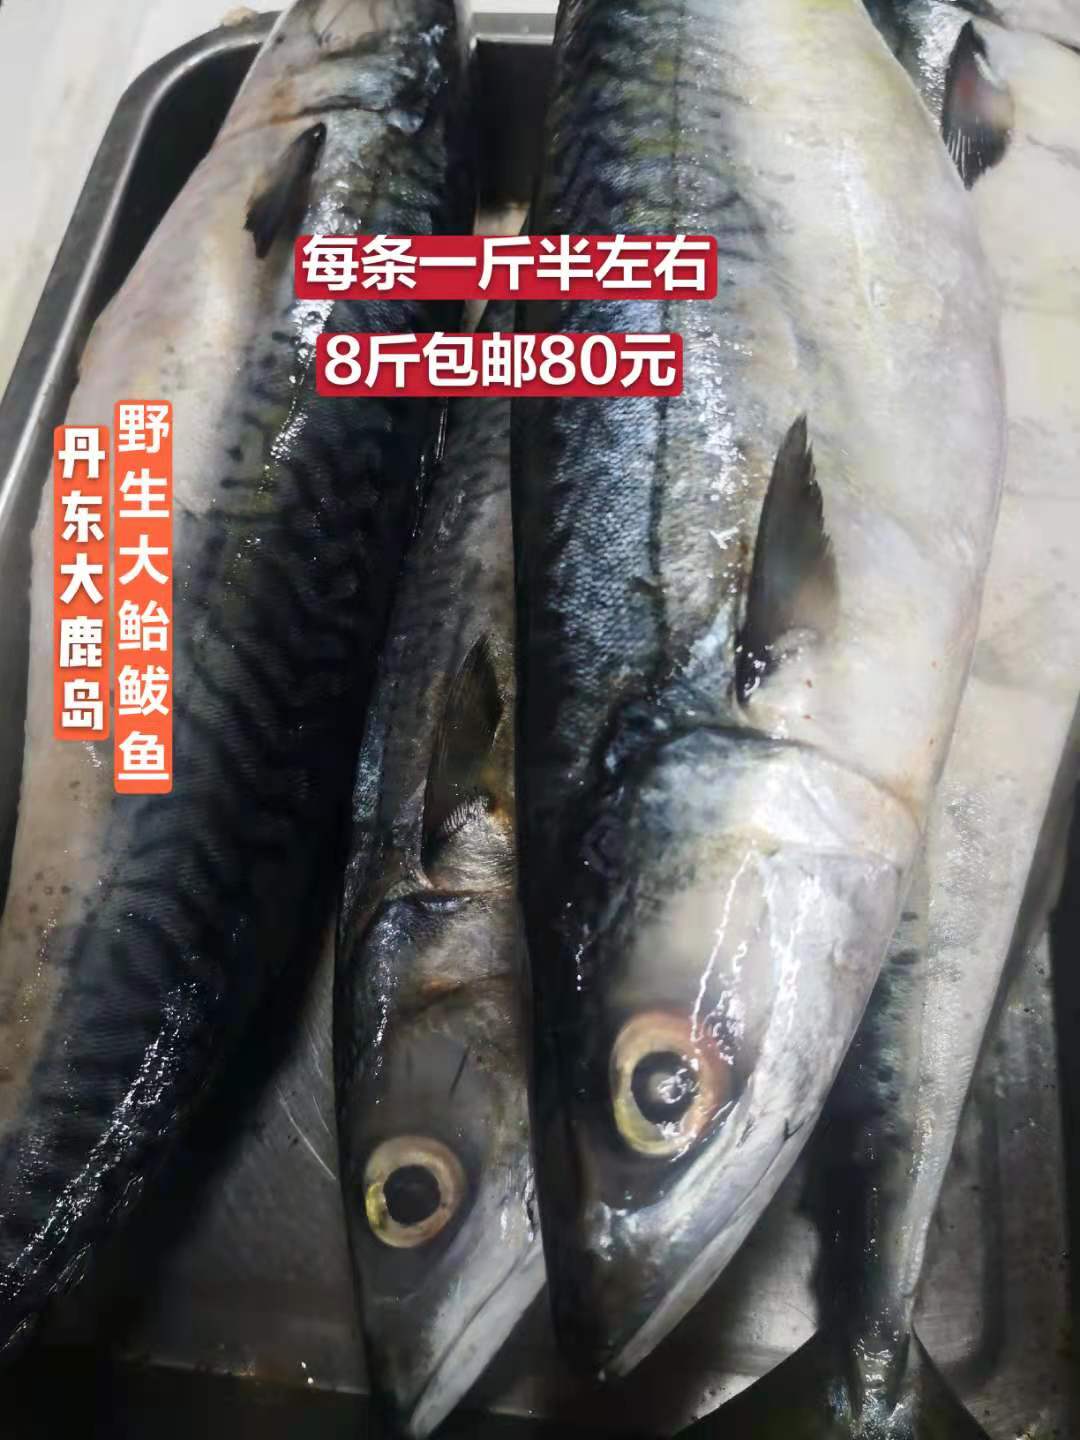 海杂鱼鲐鲅鱼丹东青条鱼青占鱼新鲜冷冻青花鱼海鲜水产8斤包邮